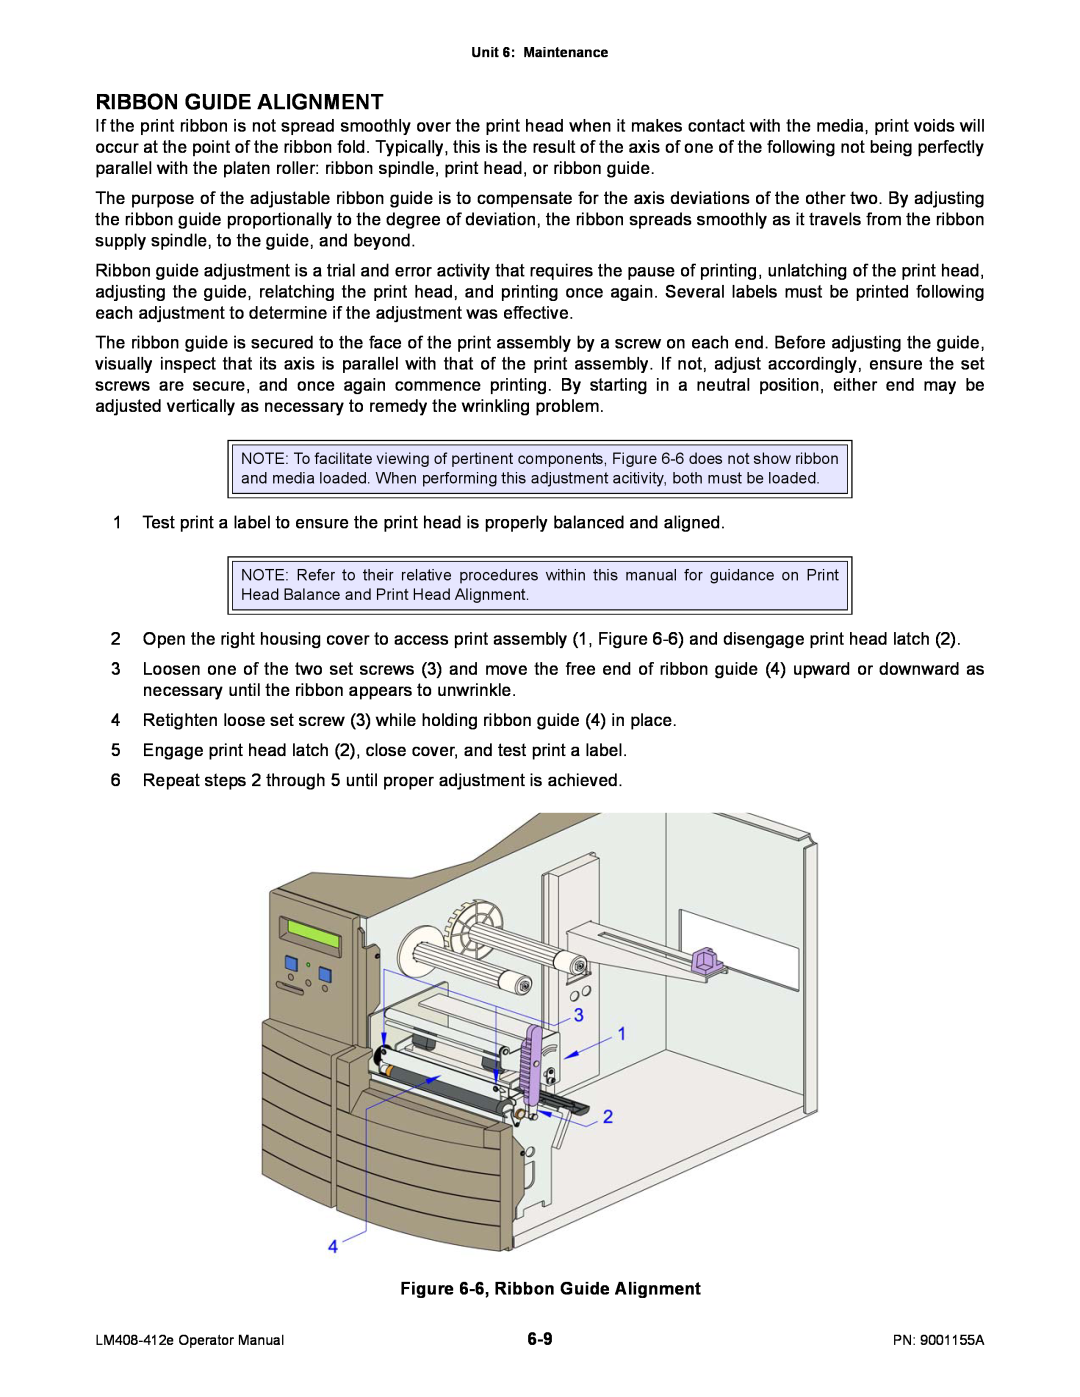 SATO LM408/412E manual 6, Ribbon Guide Alignment 